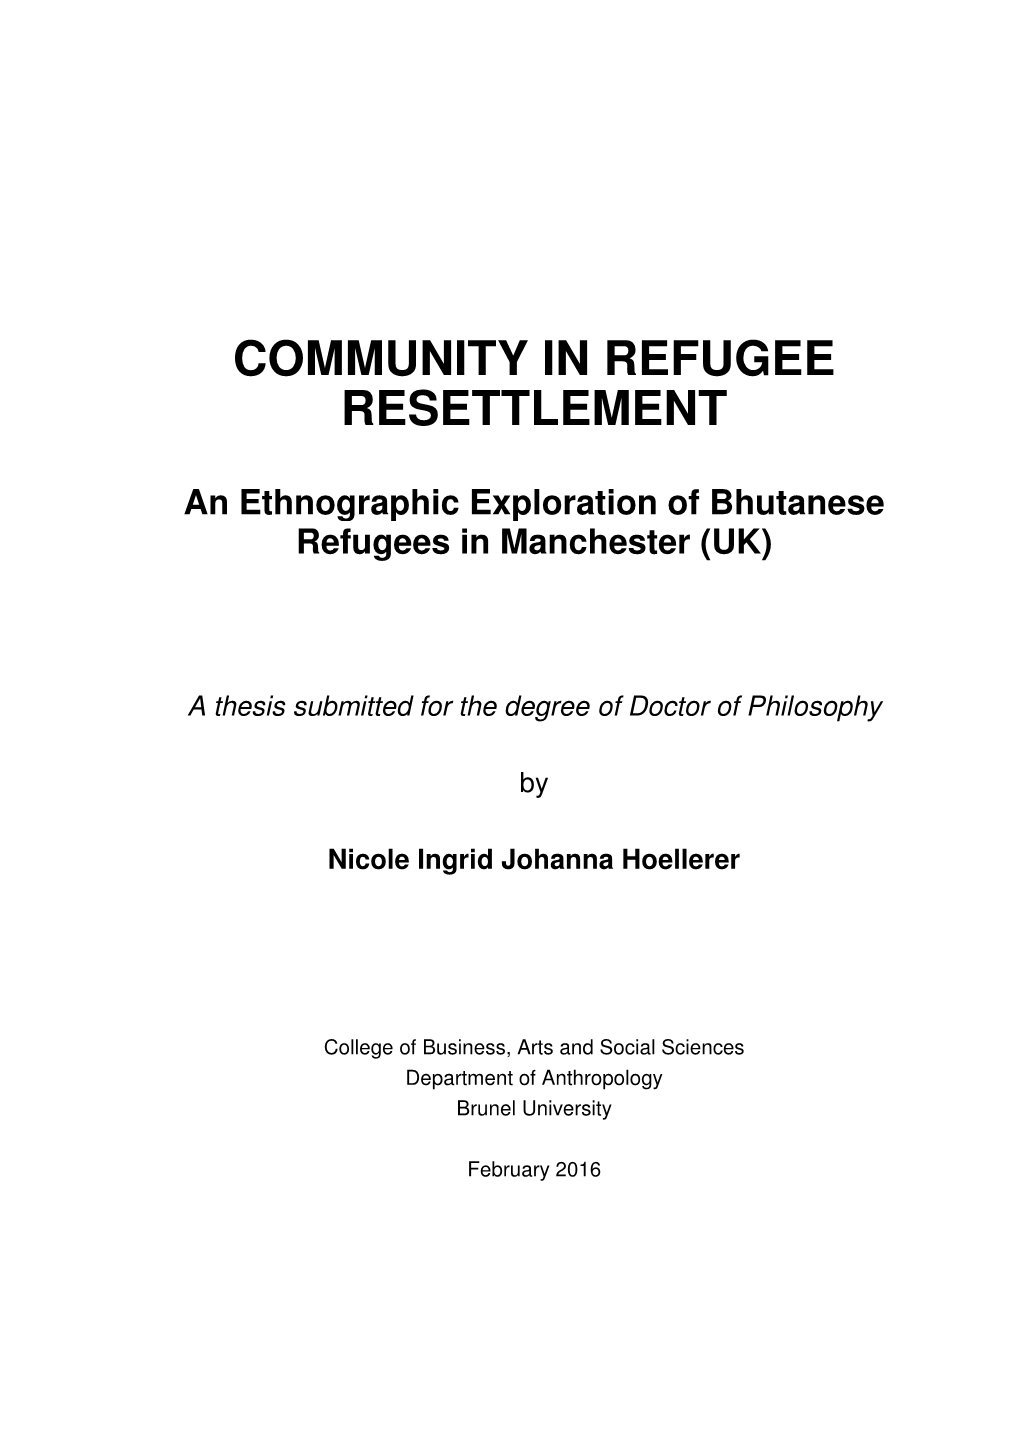 Community in Refugee Resettlement